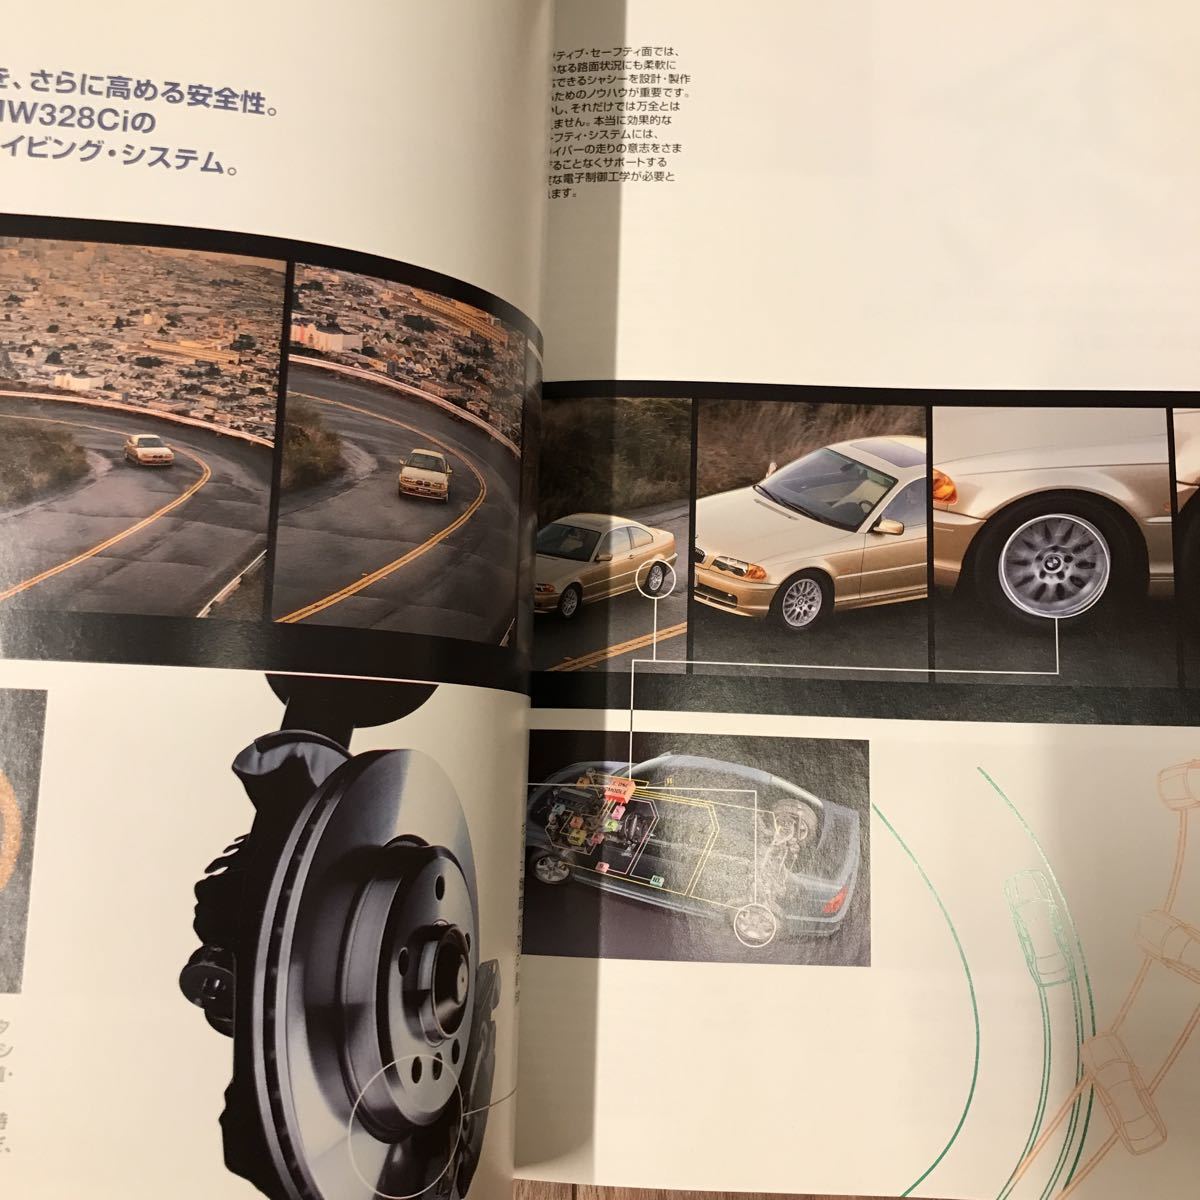 BMW E46 3 серии седан толстый,328Ci специальный толстый каталог 2 шт. комплект 1999 год выпуск версия выпуск на японском языке Printed in Germany не прочитан прекрасный товар!